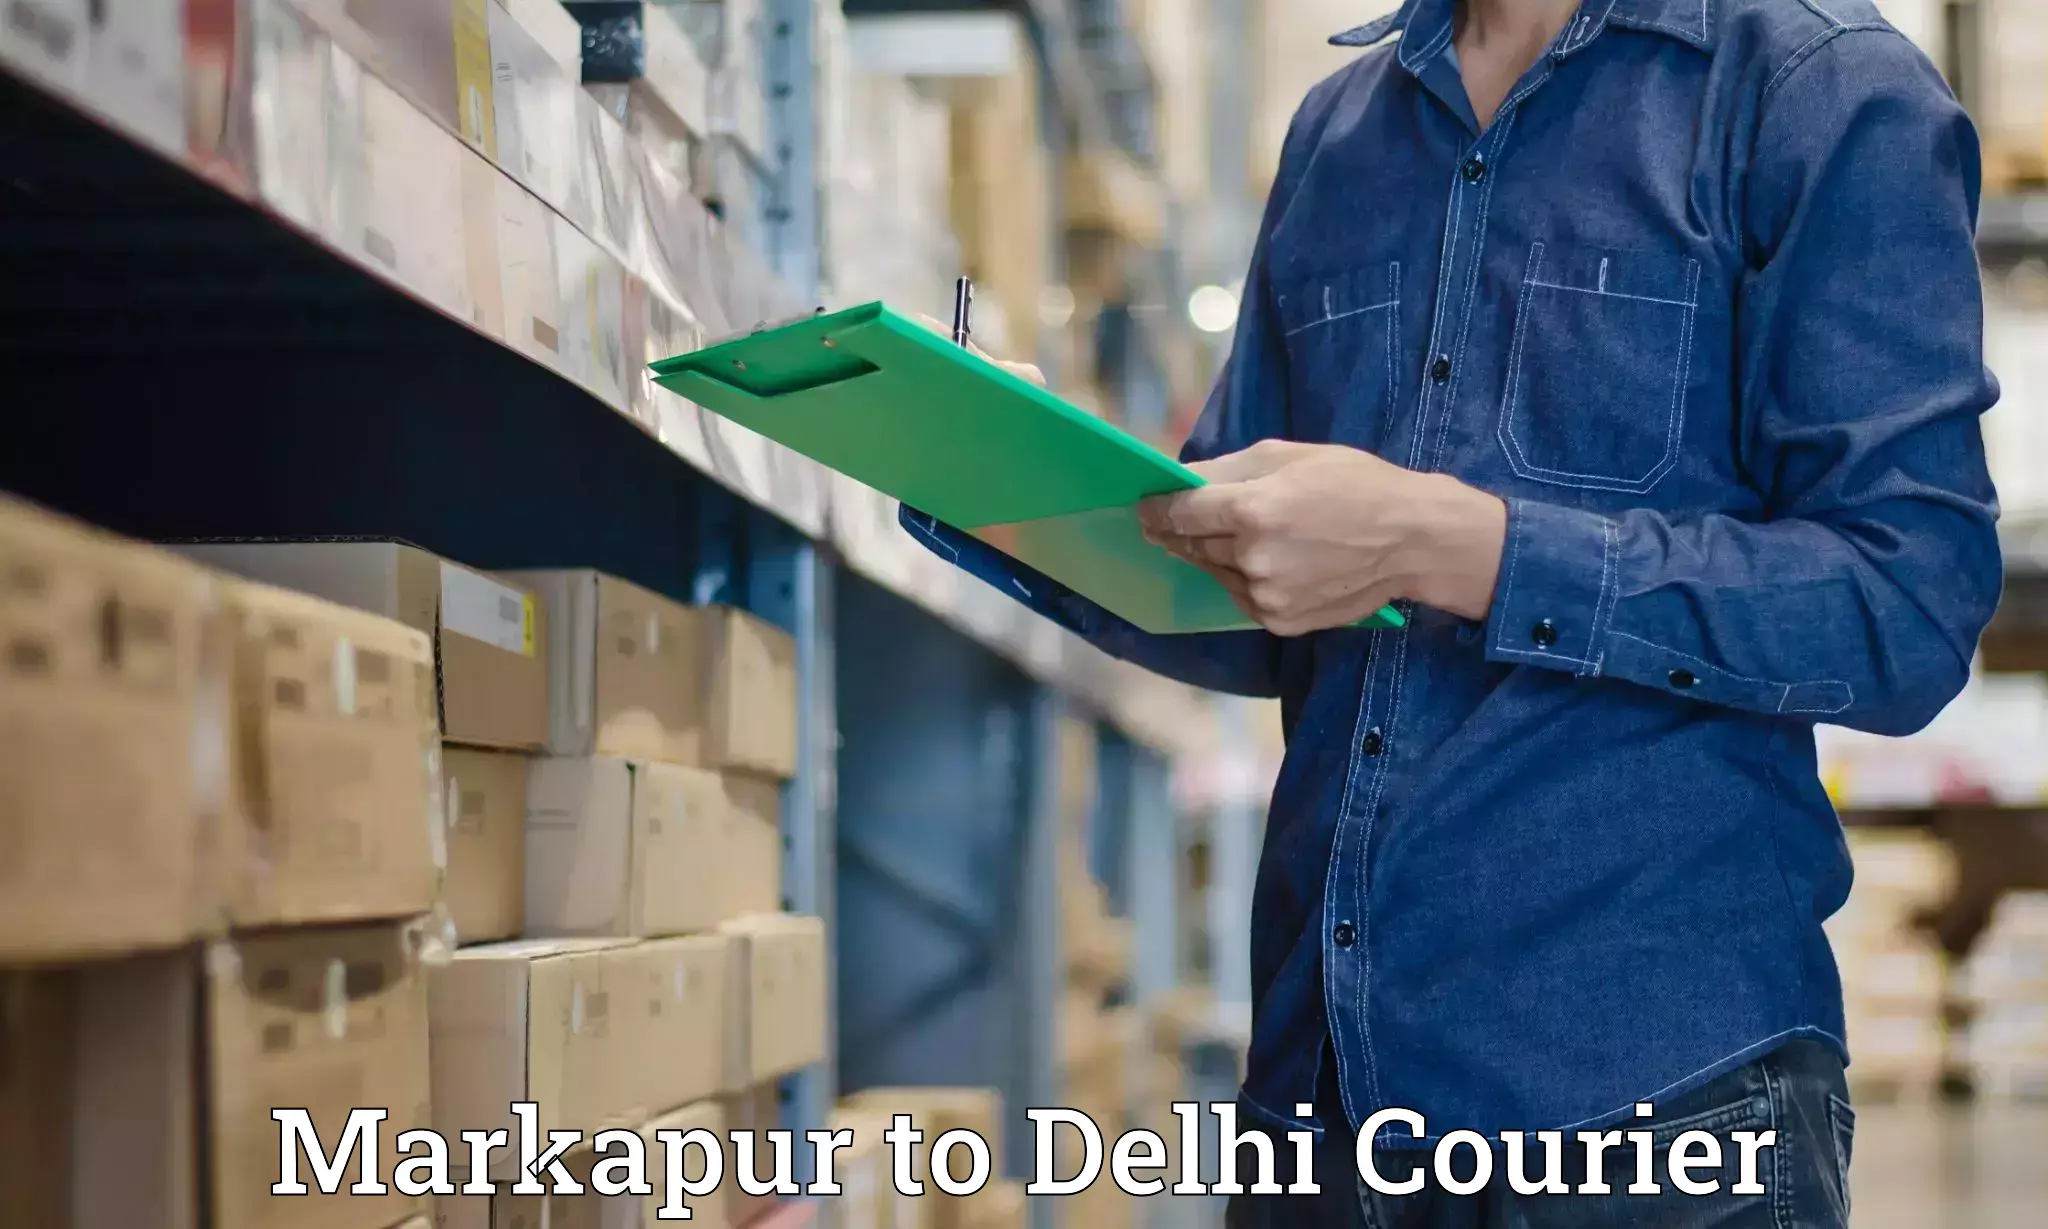 Speedy delivery service Markapur to Delhi